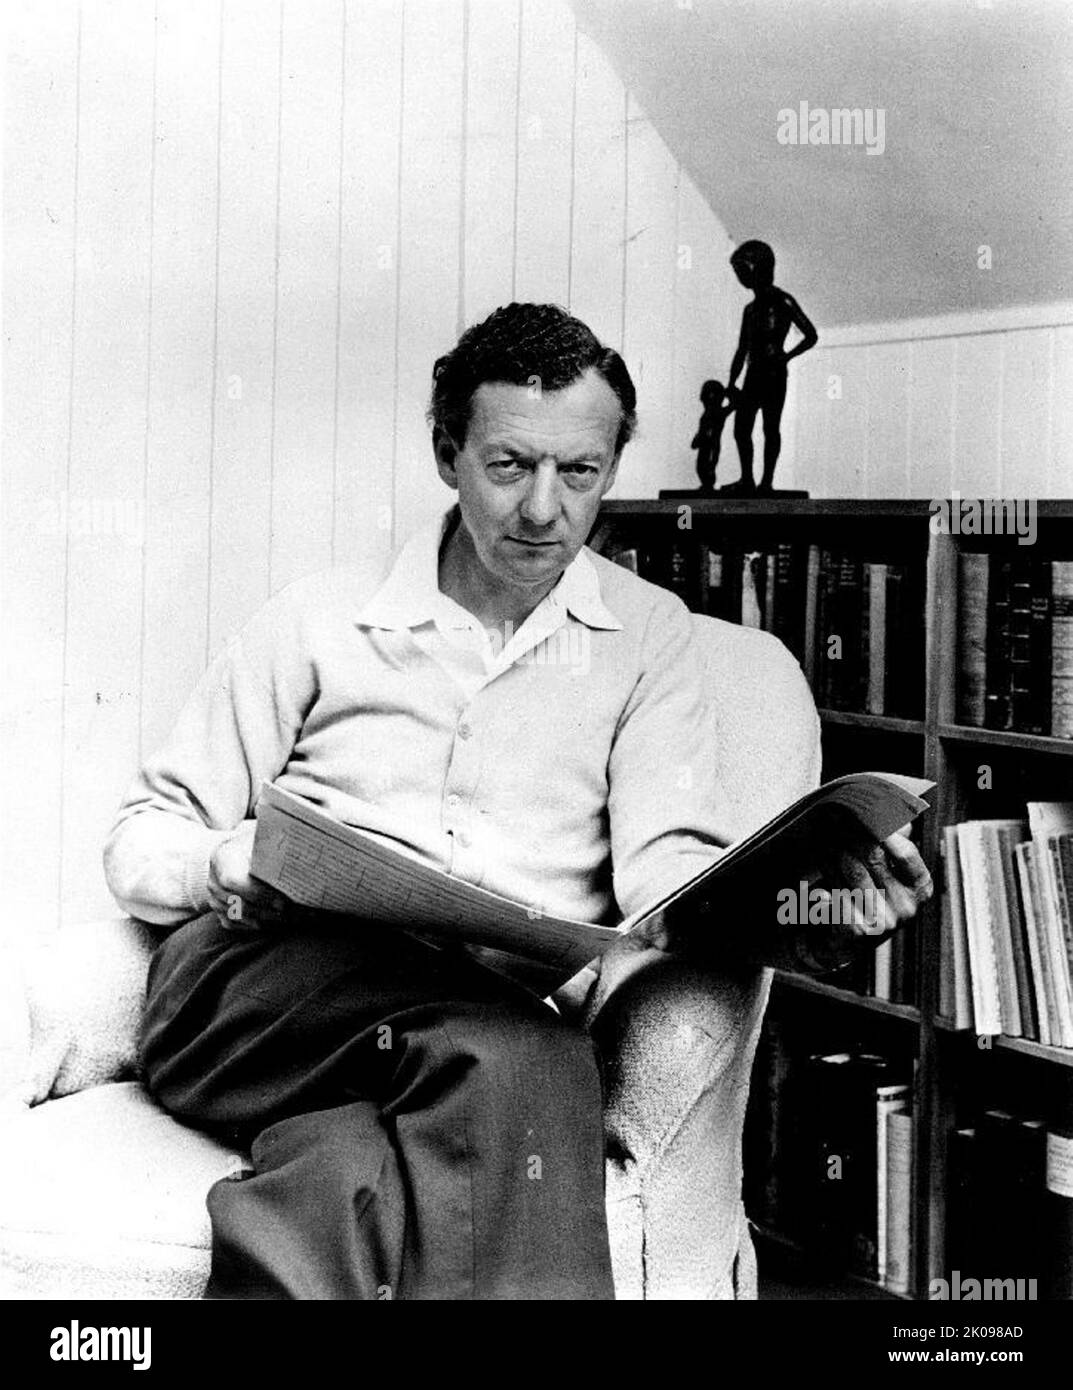 Edward Benjamin Britten, barone Britten OM CH (22 novembre 1913 – 4 dicembre 1976), è stato un . Fu una figura centrale della musica britannica del 20th° secolo, con una serie di opere tra cui opera, altri brani vocali, orchestrale e da camera. Foto Stock